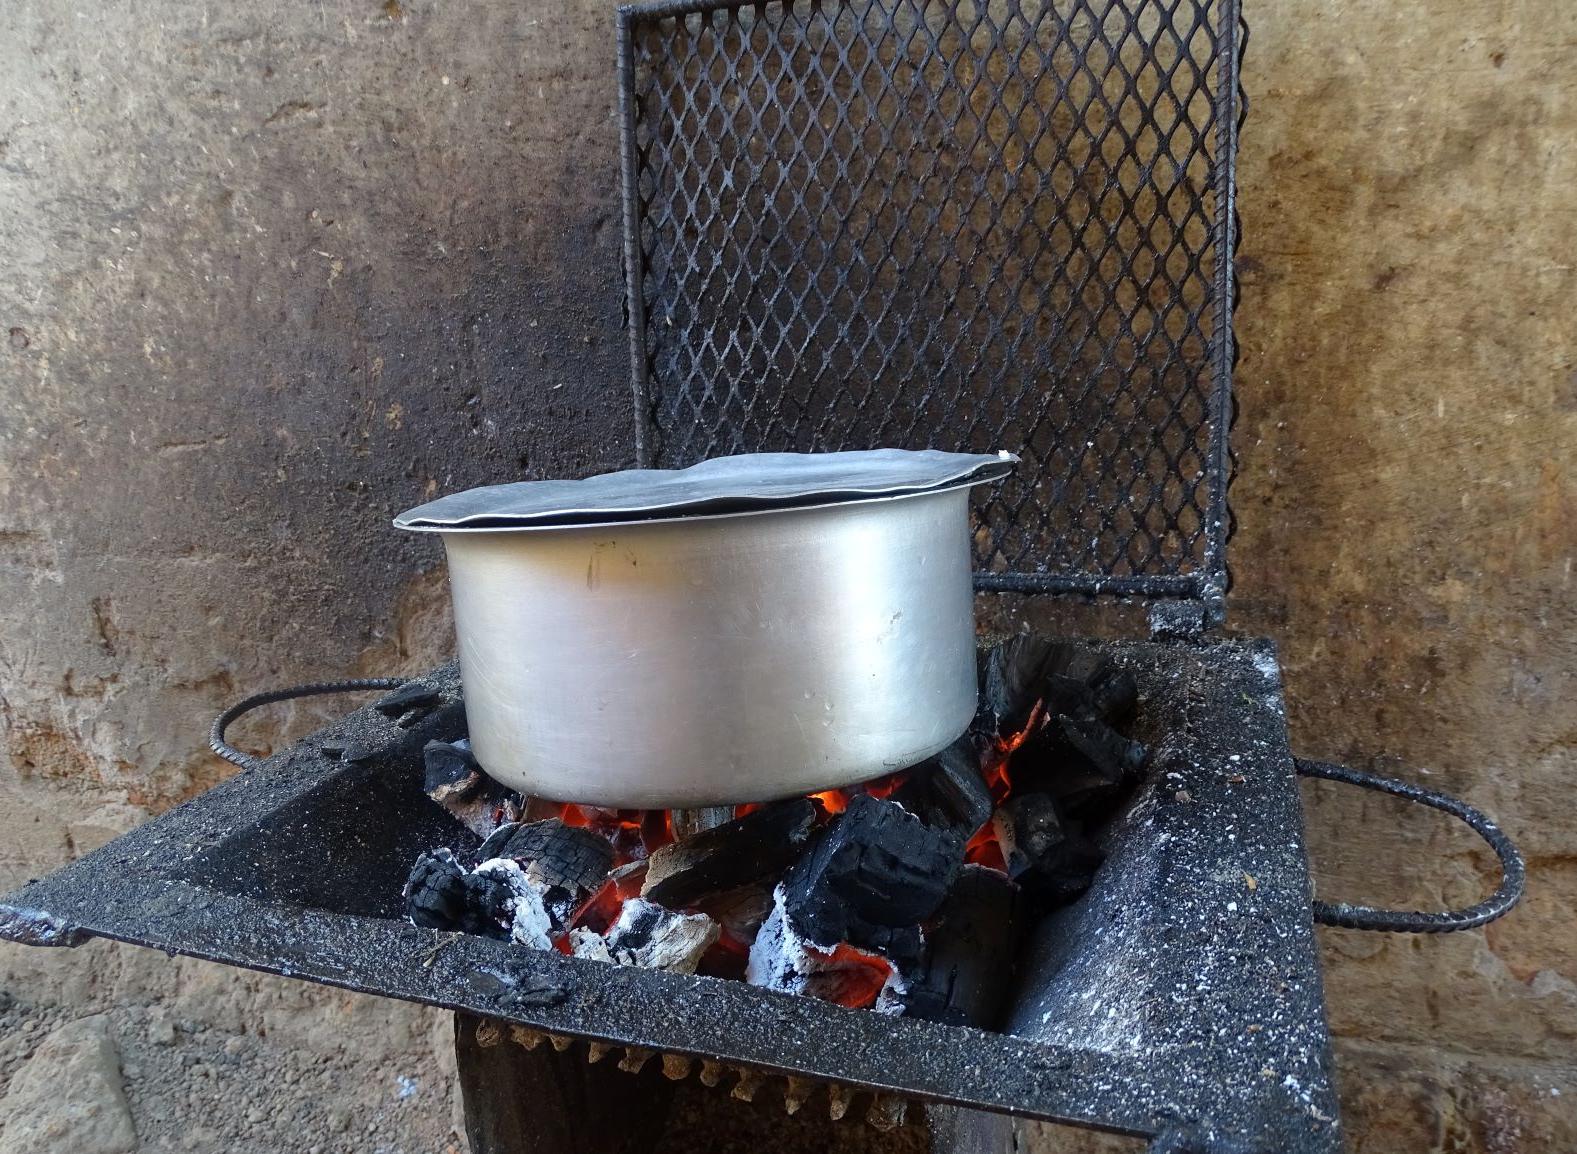 En RDC, dans plus de 80 % des foyers, la cuisson se fait au charbon de bois (Photo: Jan Bogaert)